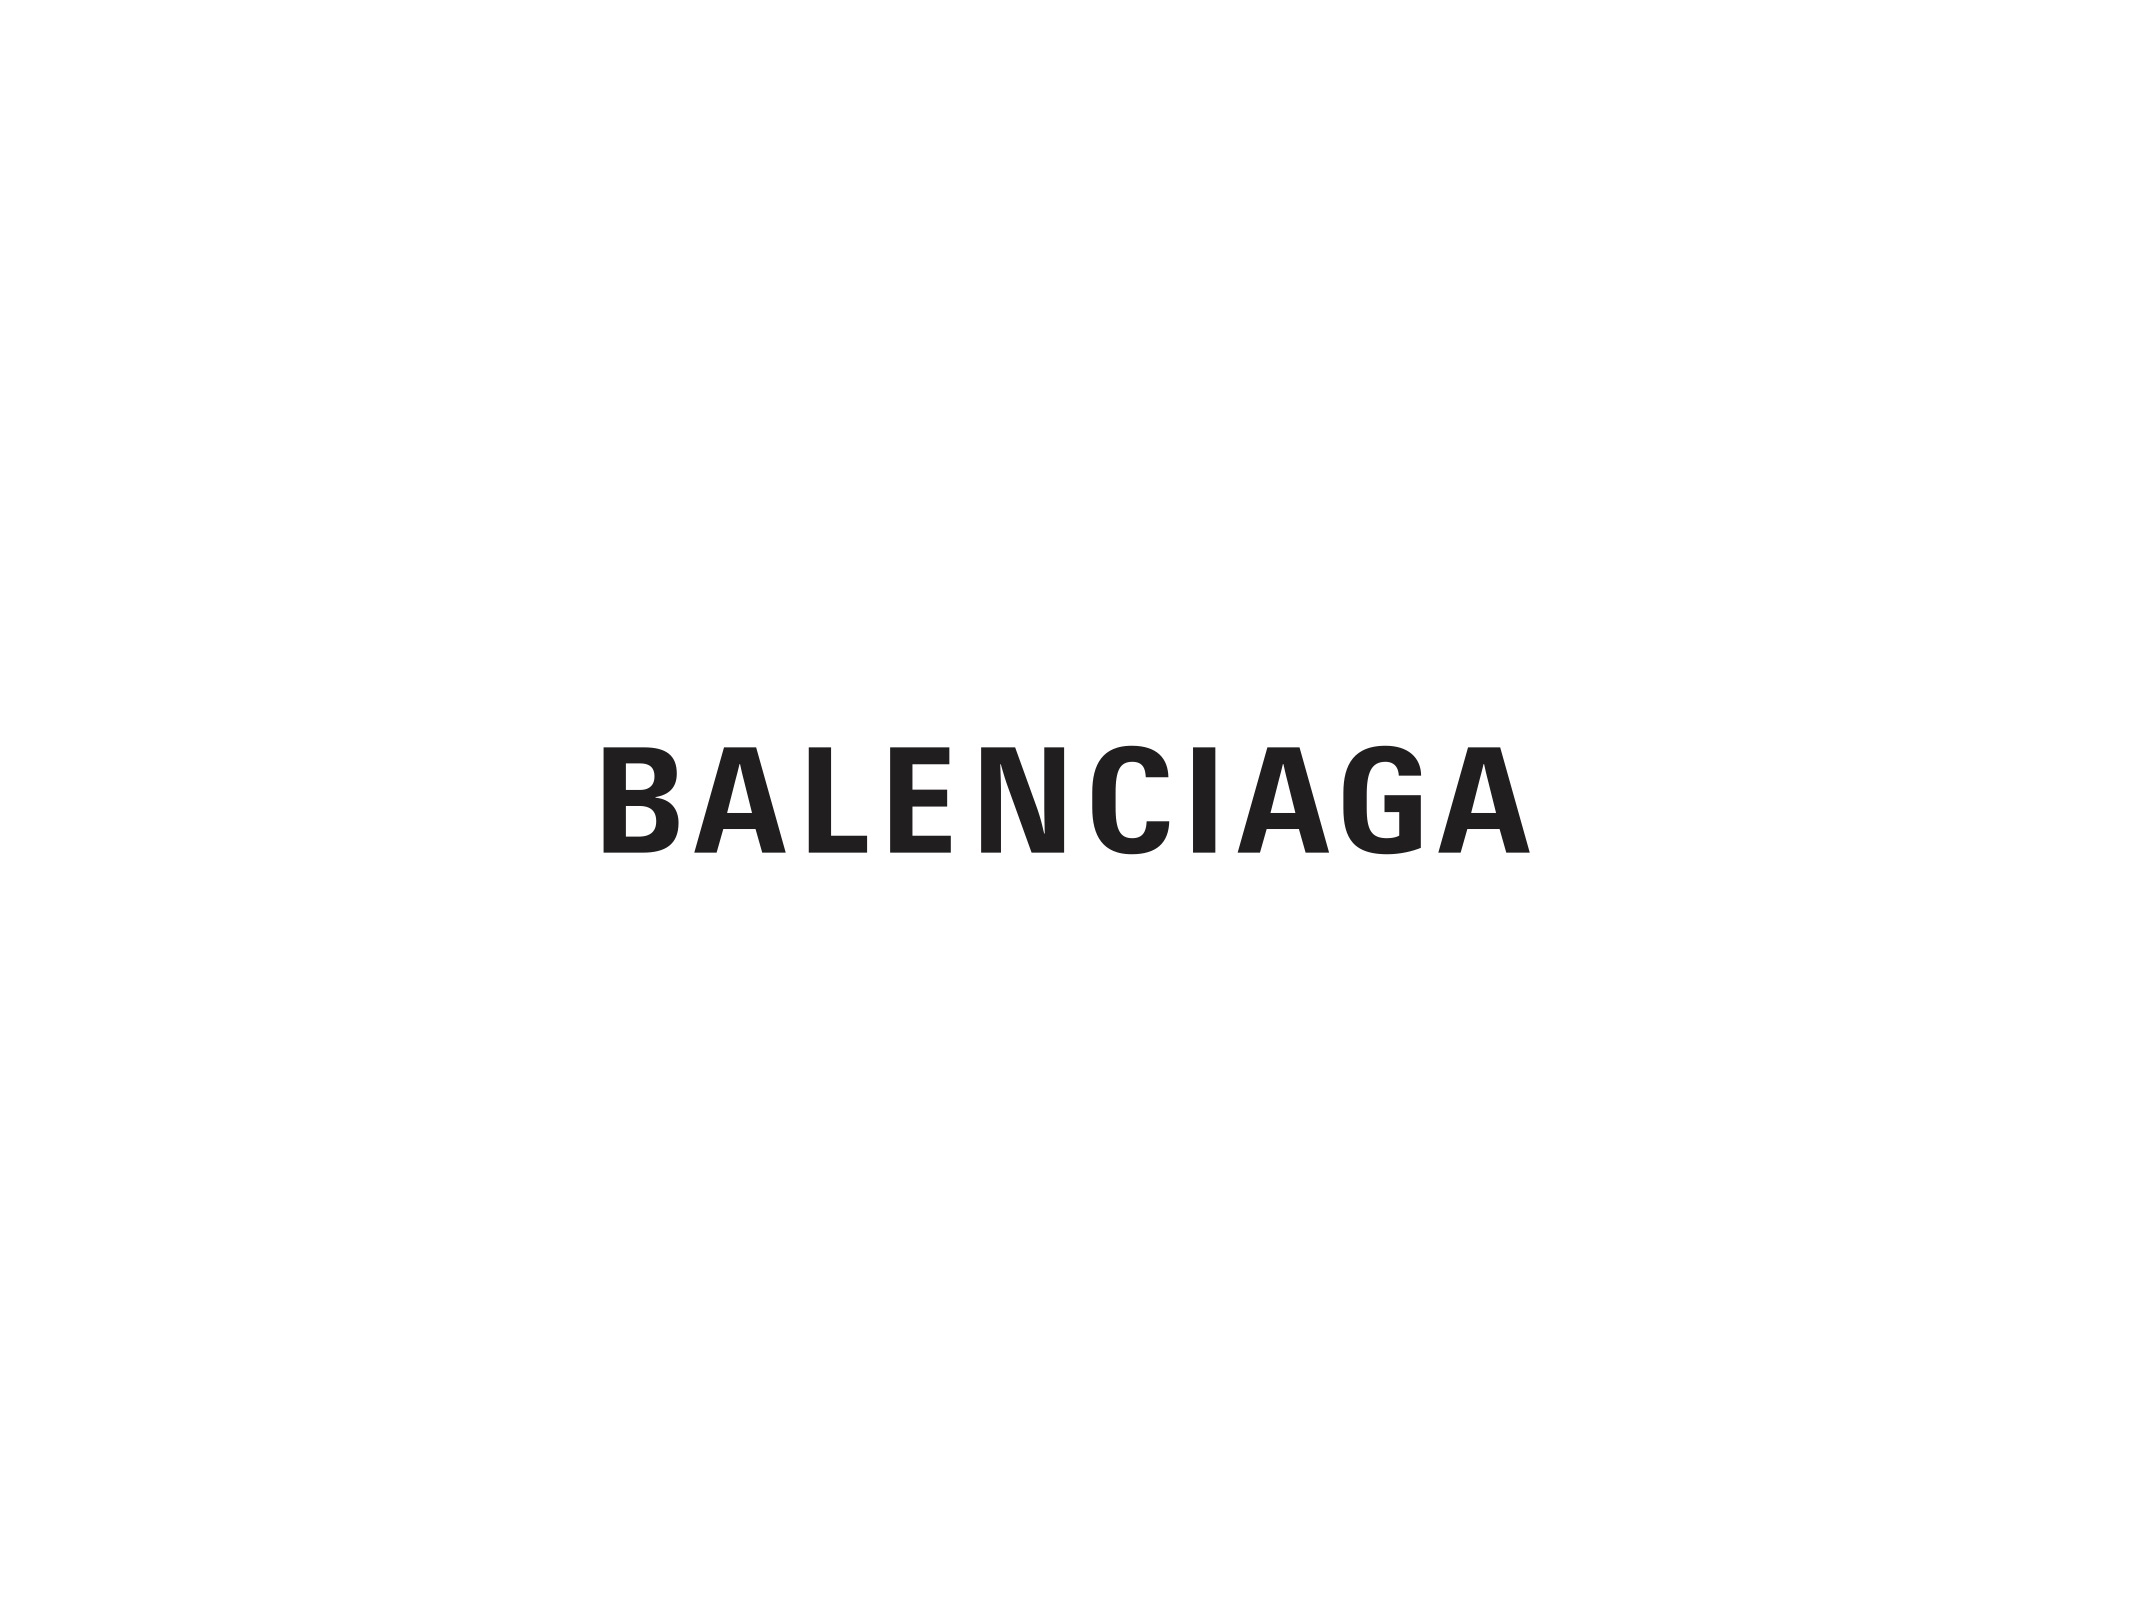 Balenciaga выпустили атласные балетки для мужчин. Как они выглядят?